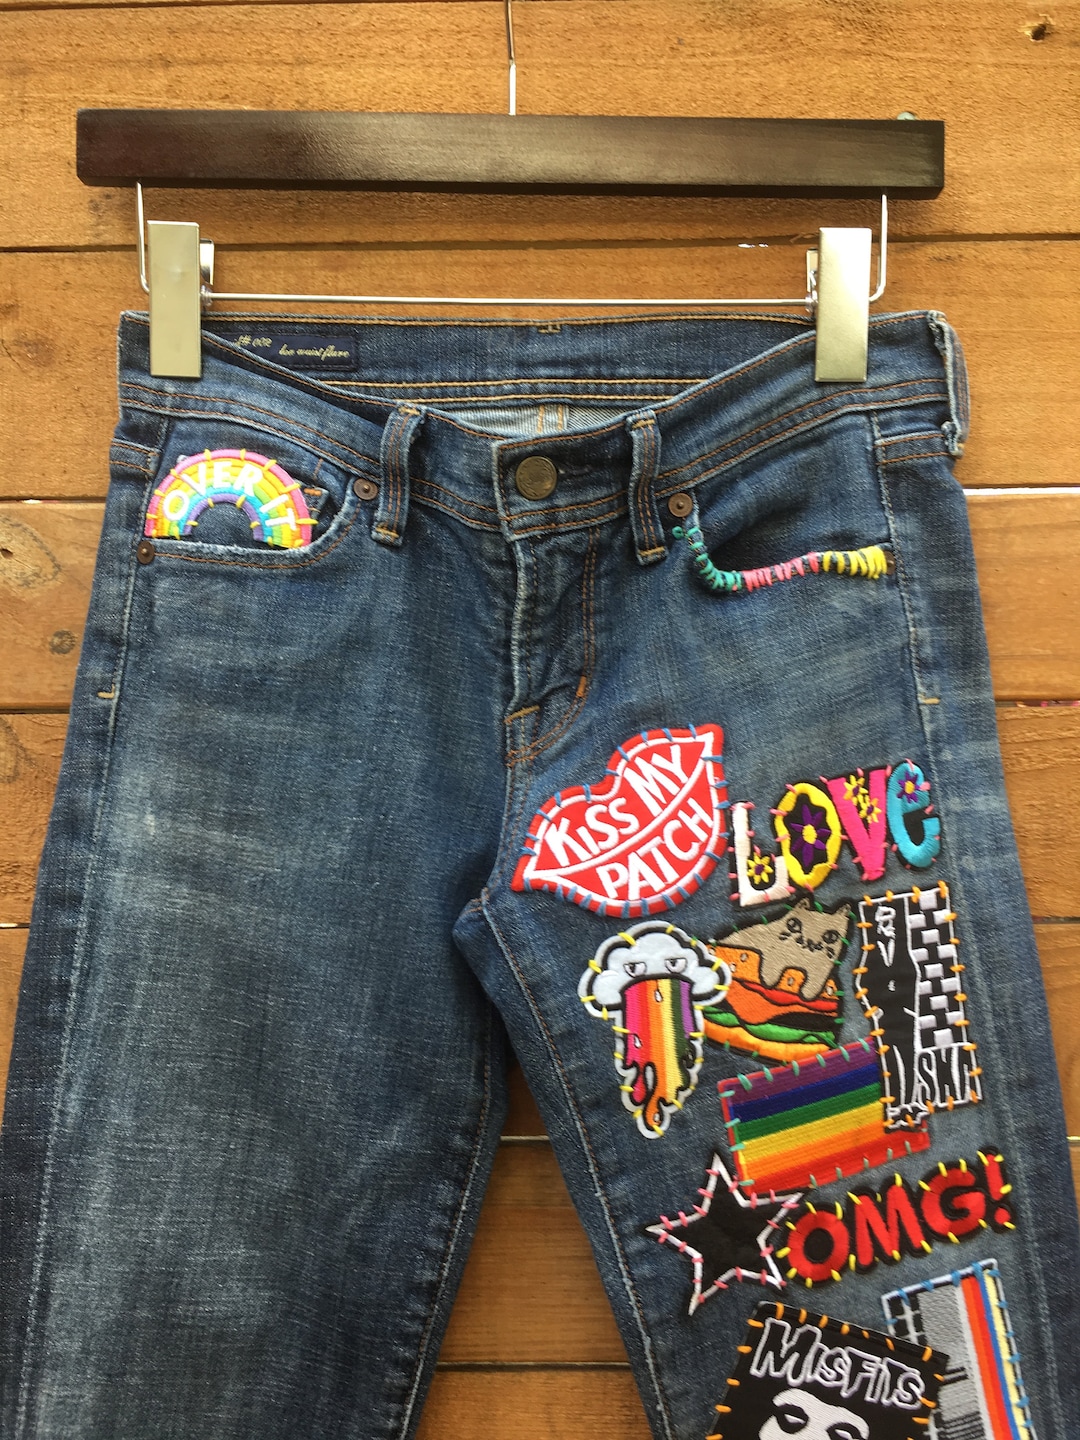 Custom patchwork jeans I did few months ago : r/streetwear